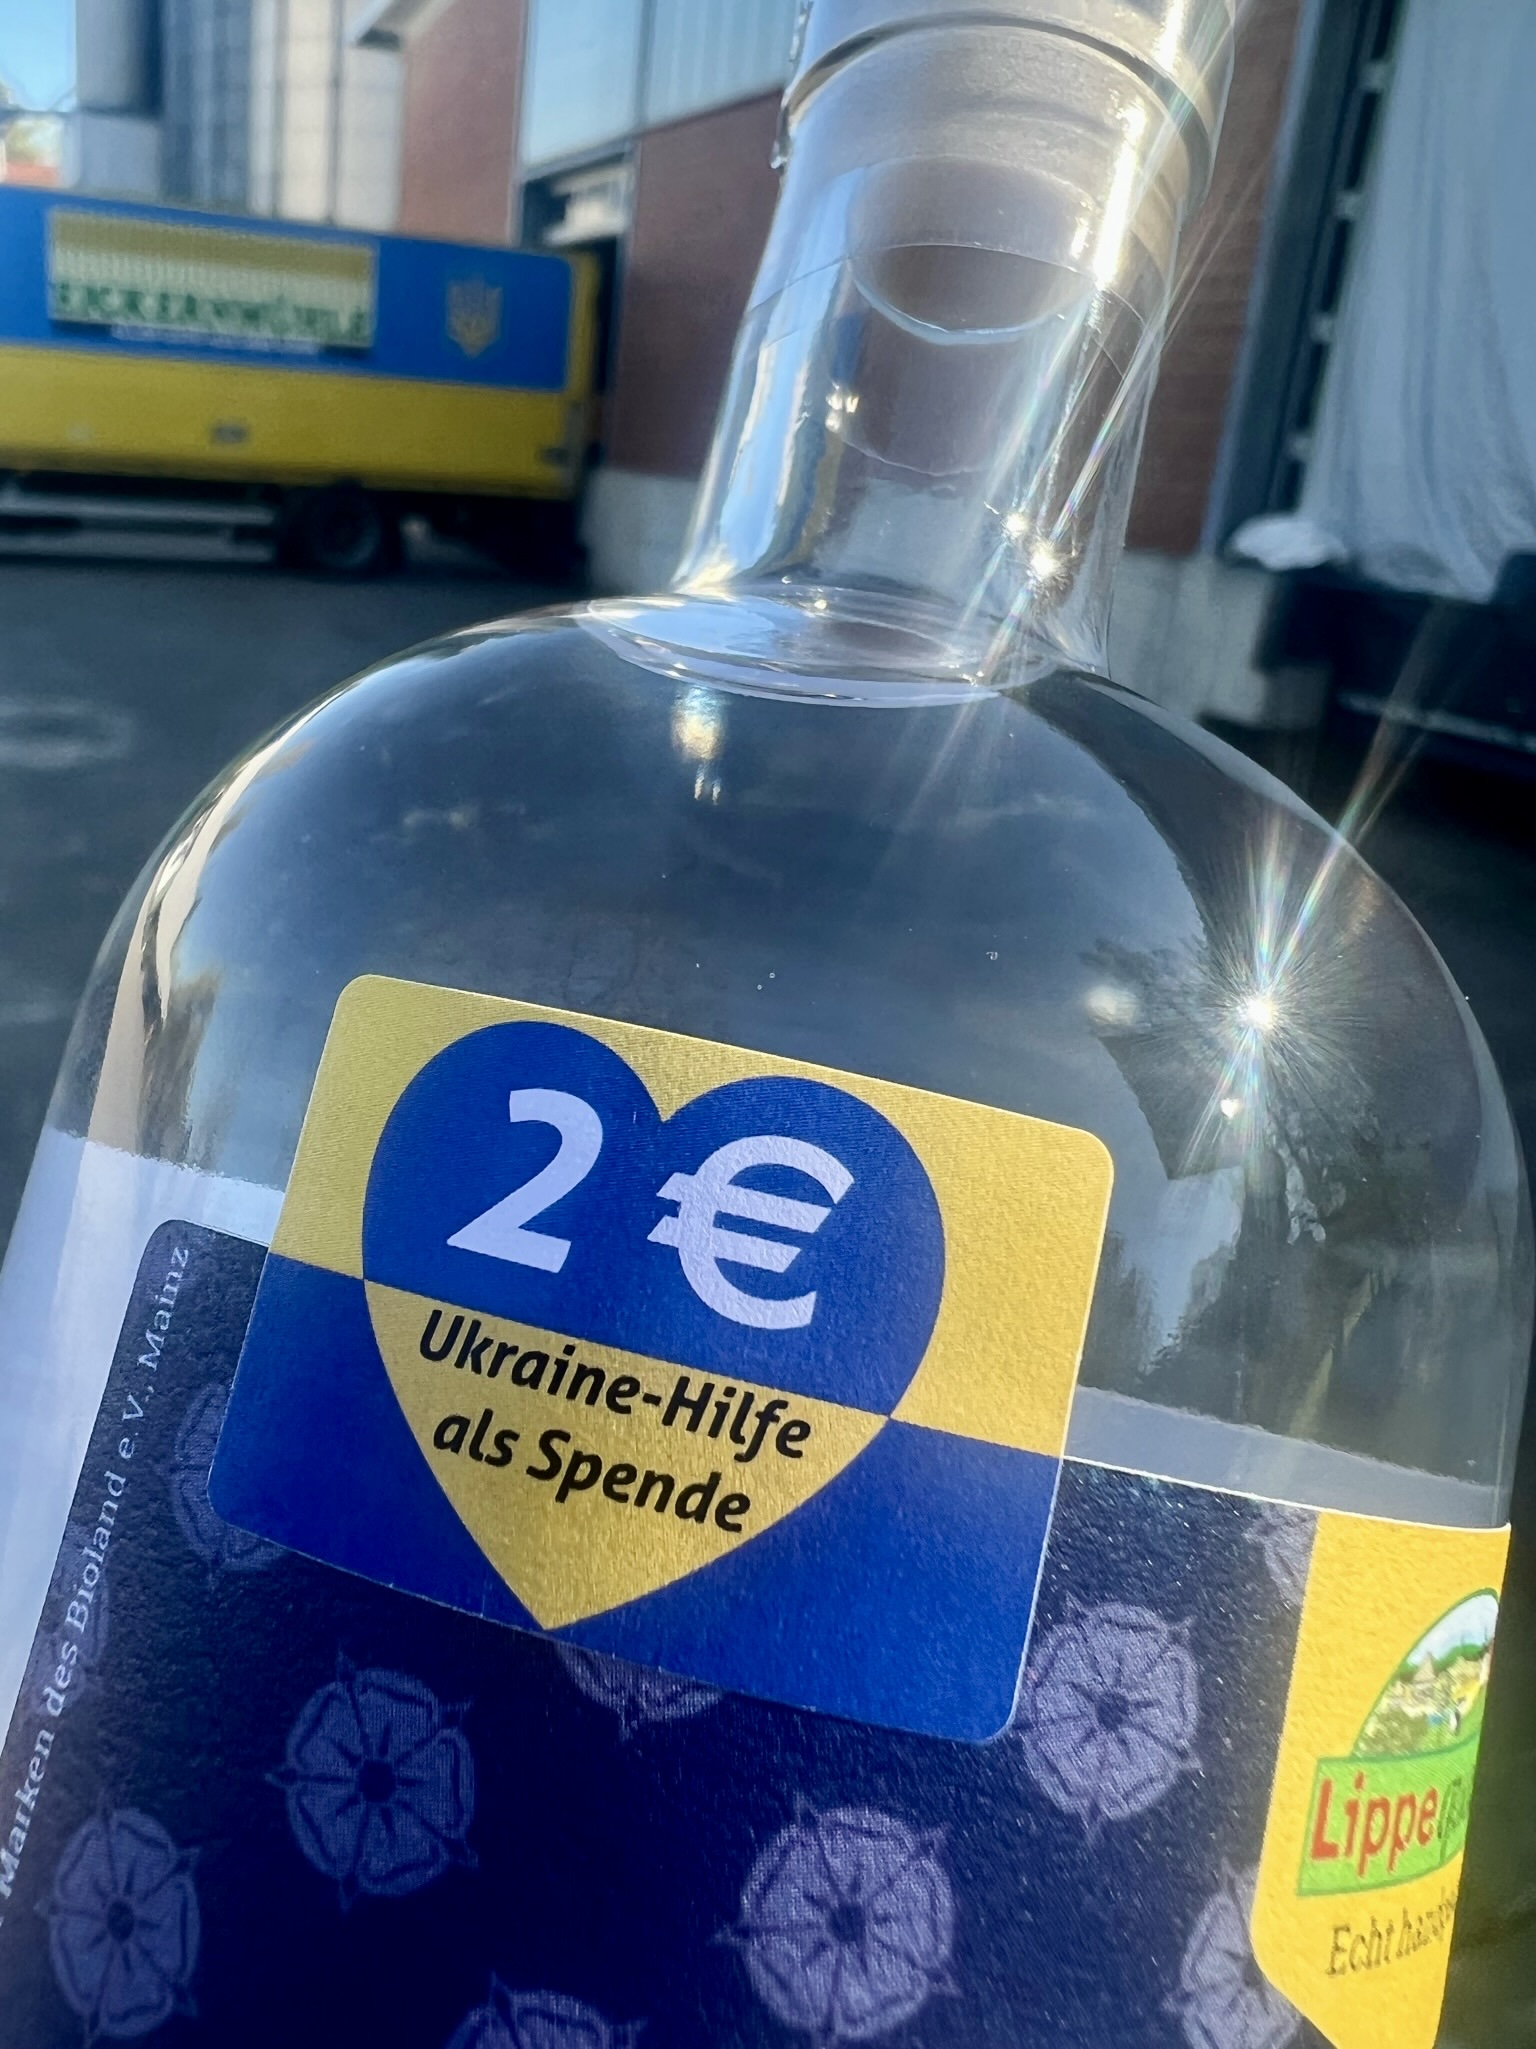 Lippischer Bioland Mühlen-Vodka 0,5l